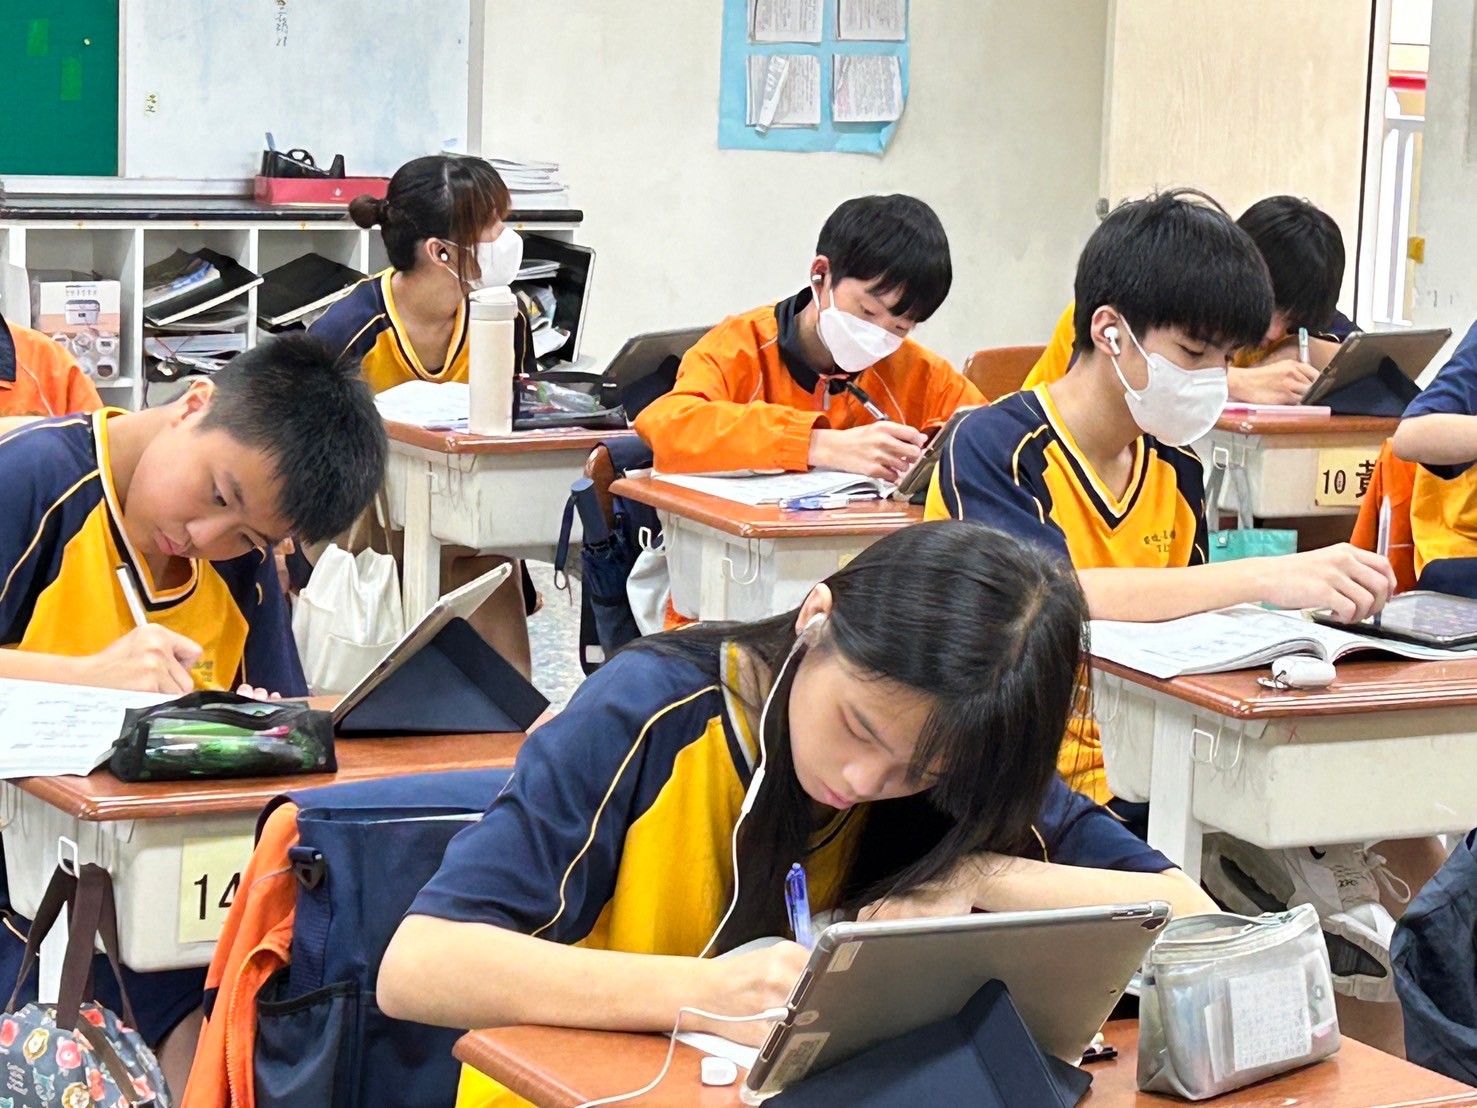 竹光國中國文課堂有聲有色活動照片